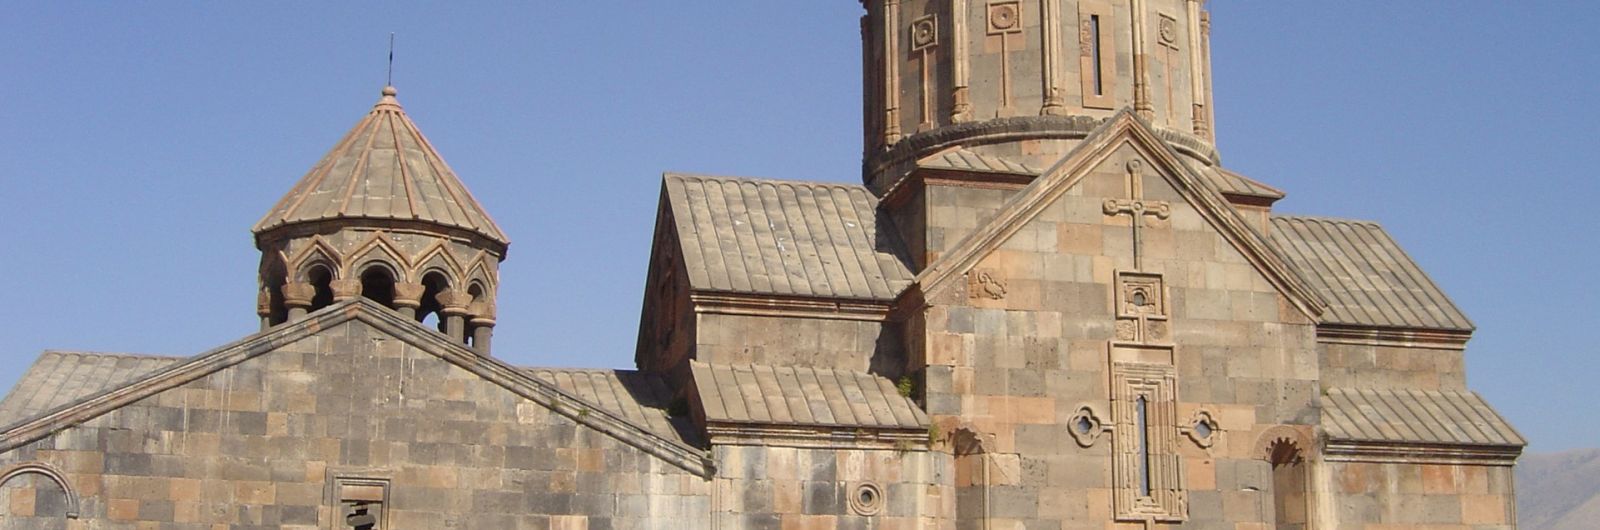 armenia tatev